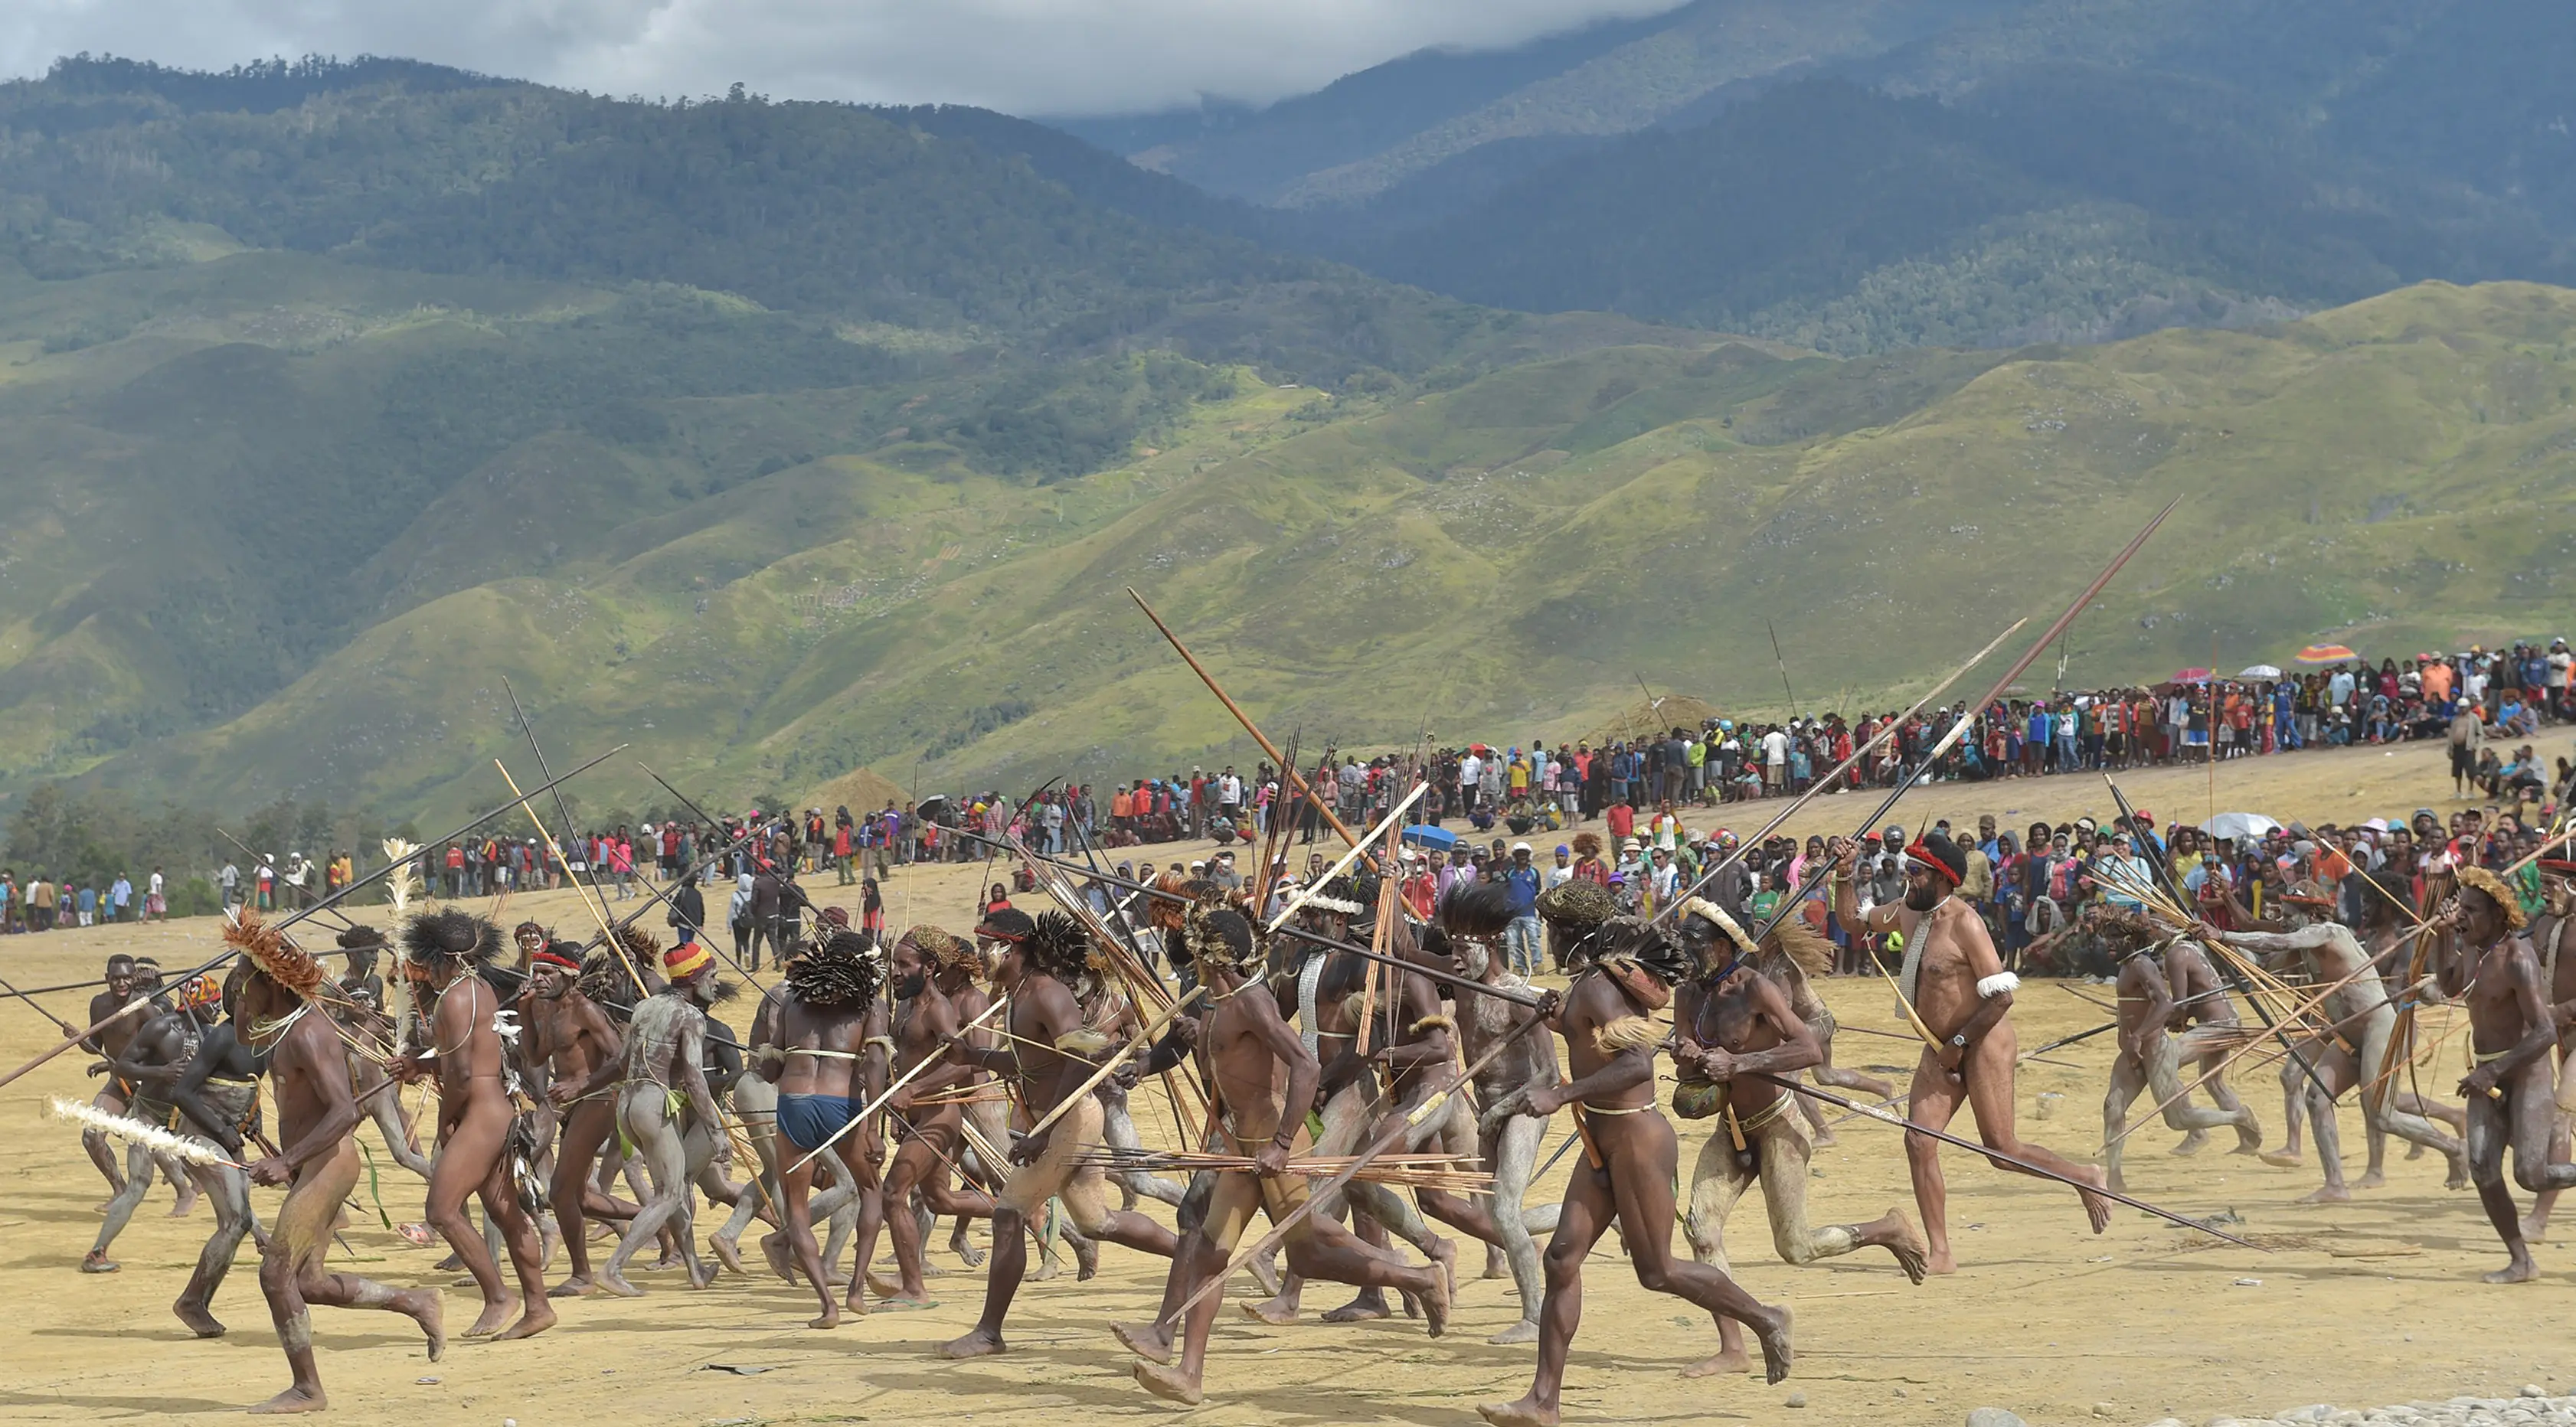  Ingin Lihat Peperangan Suku Papua? Ke Festival Lembah Baliem di Wamena saja. (AFP PHOTO/Adek Berry)